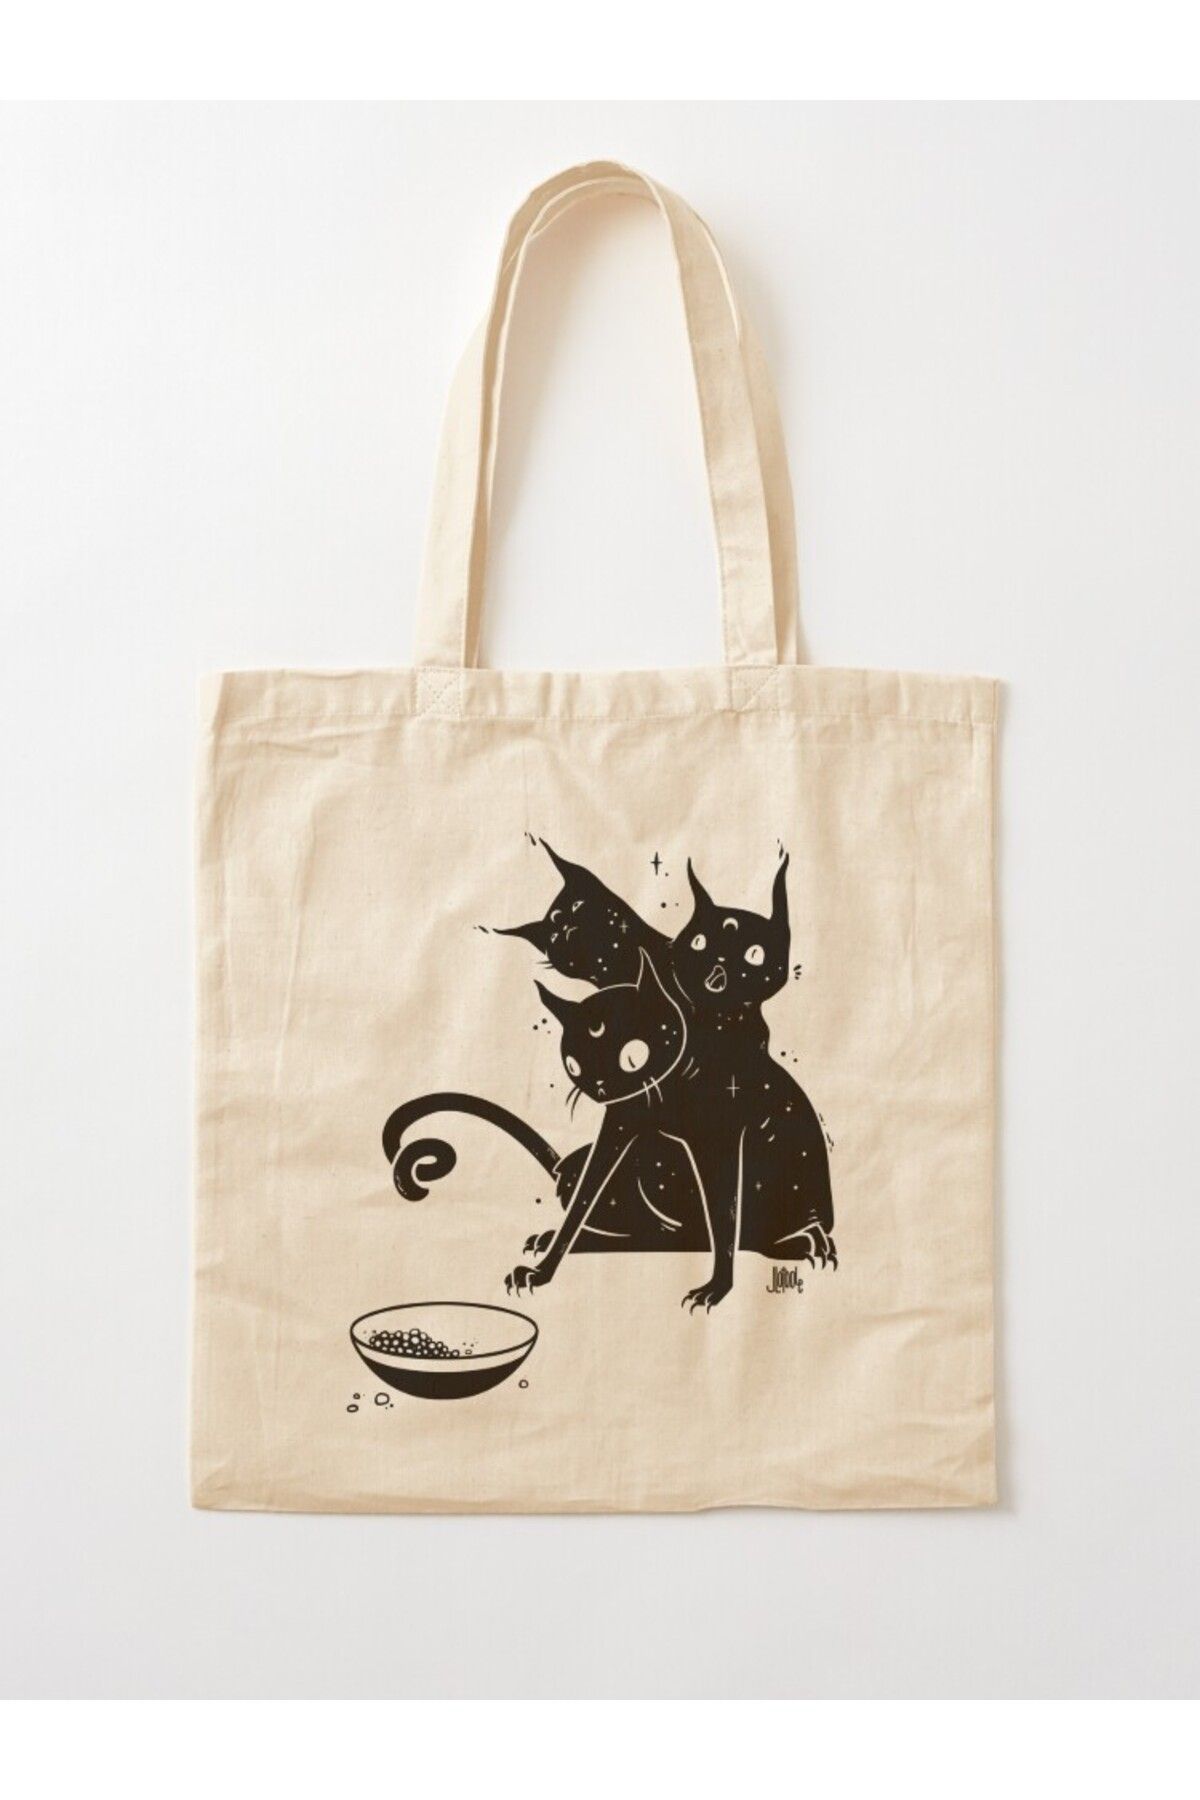 w house Körüklü Bez Omuz Çantası 12408 - Creepy Cute Three Headed Black Cat Artwork